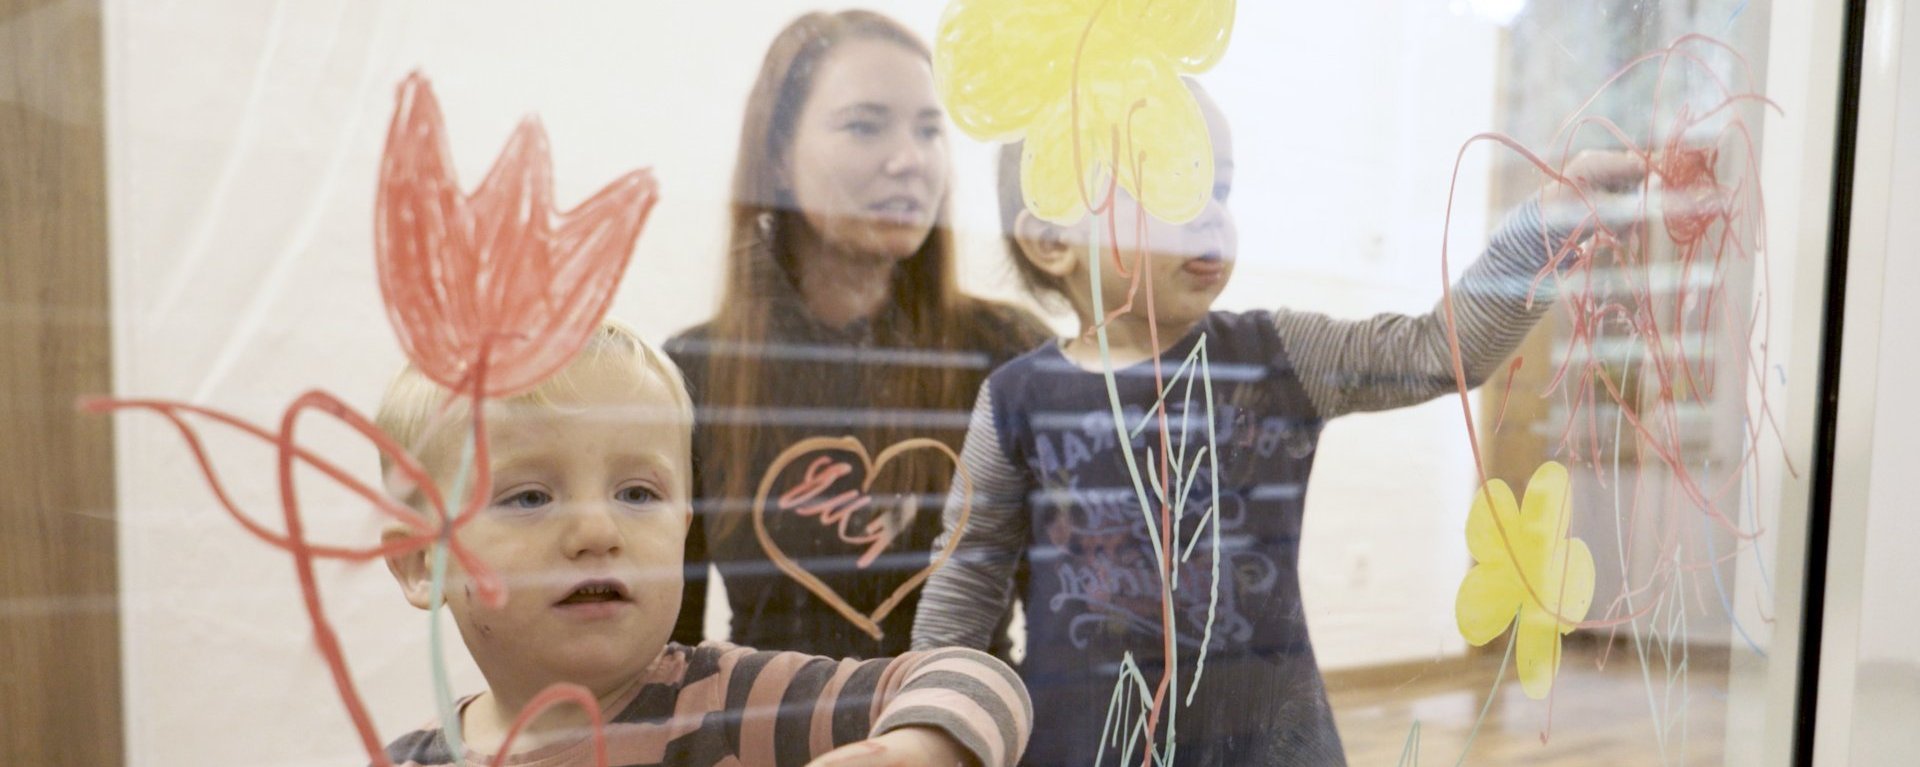 Kinder bemalen mit bunten Malfarben eine Glaswand im Mutter-Kind-Haus